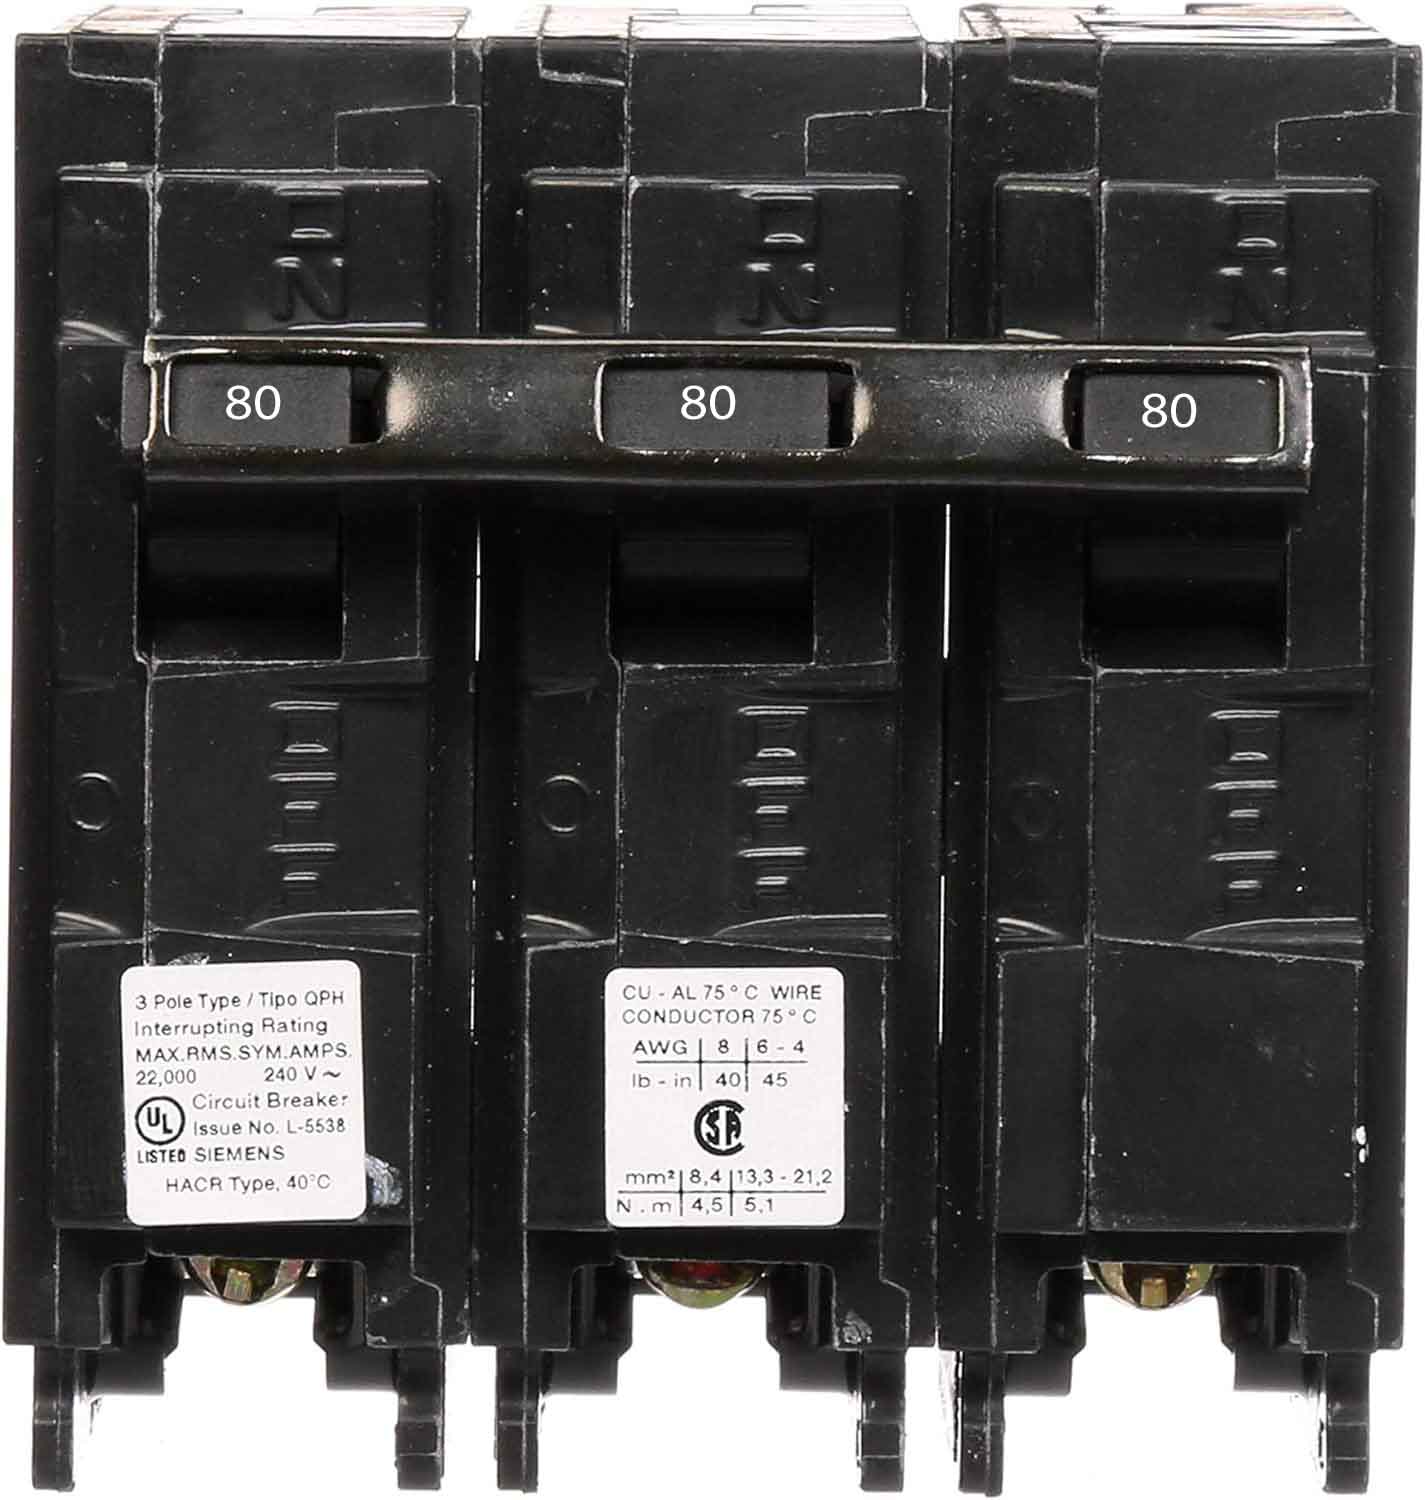 Q380H - Siemens 80 Amp 3 Pole 240 Volt Molded Case Circuit Breaker